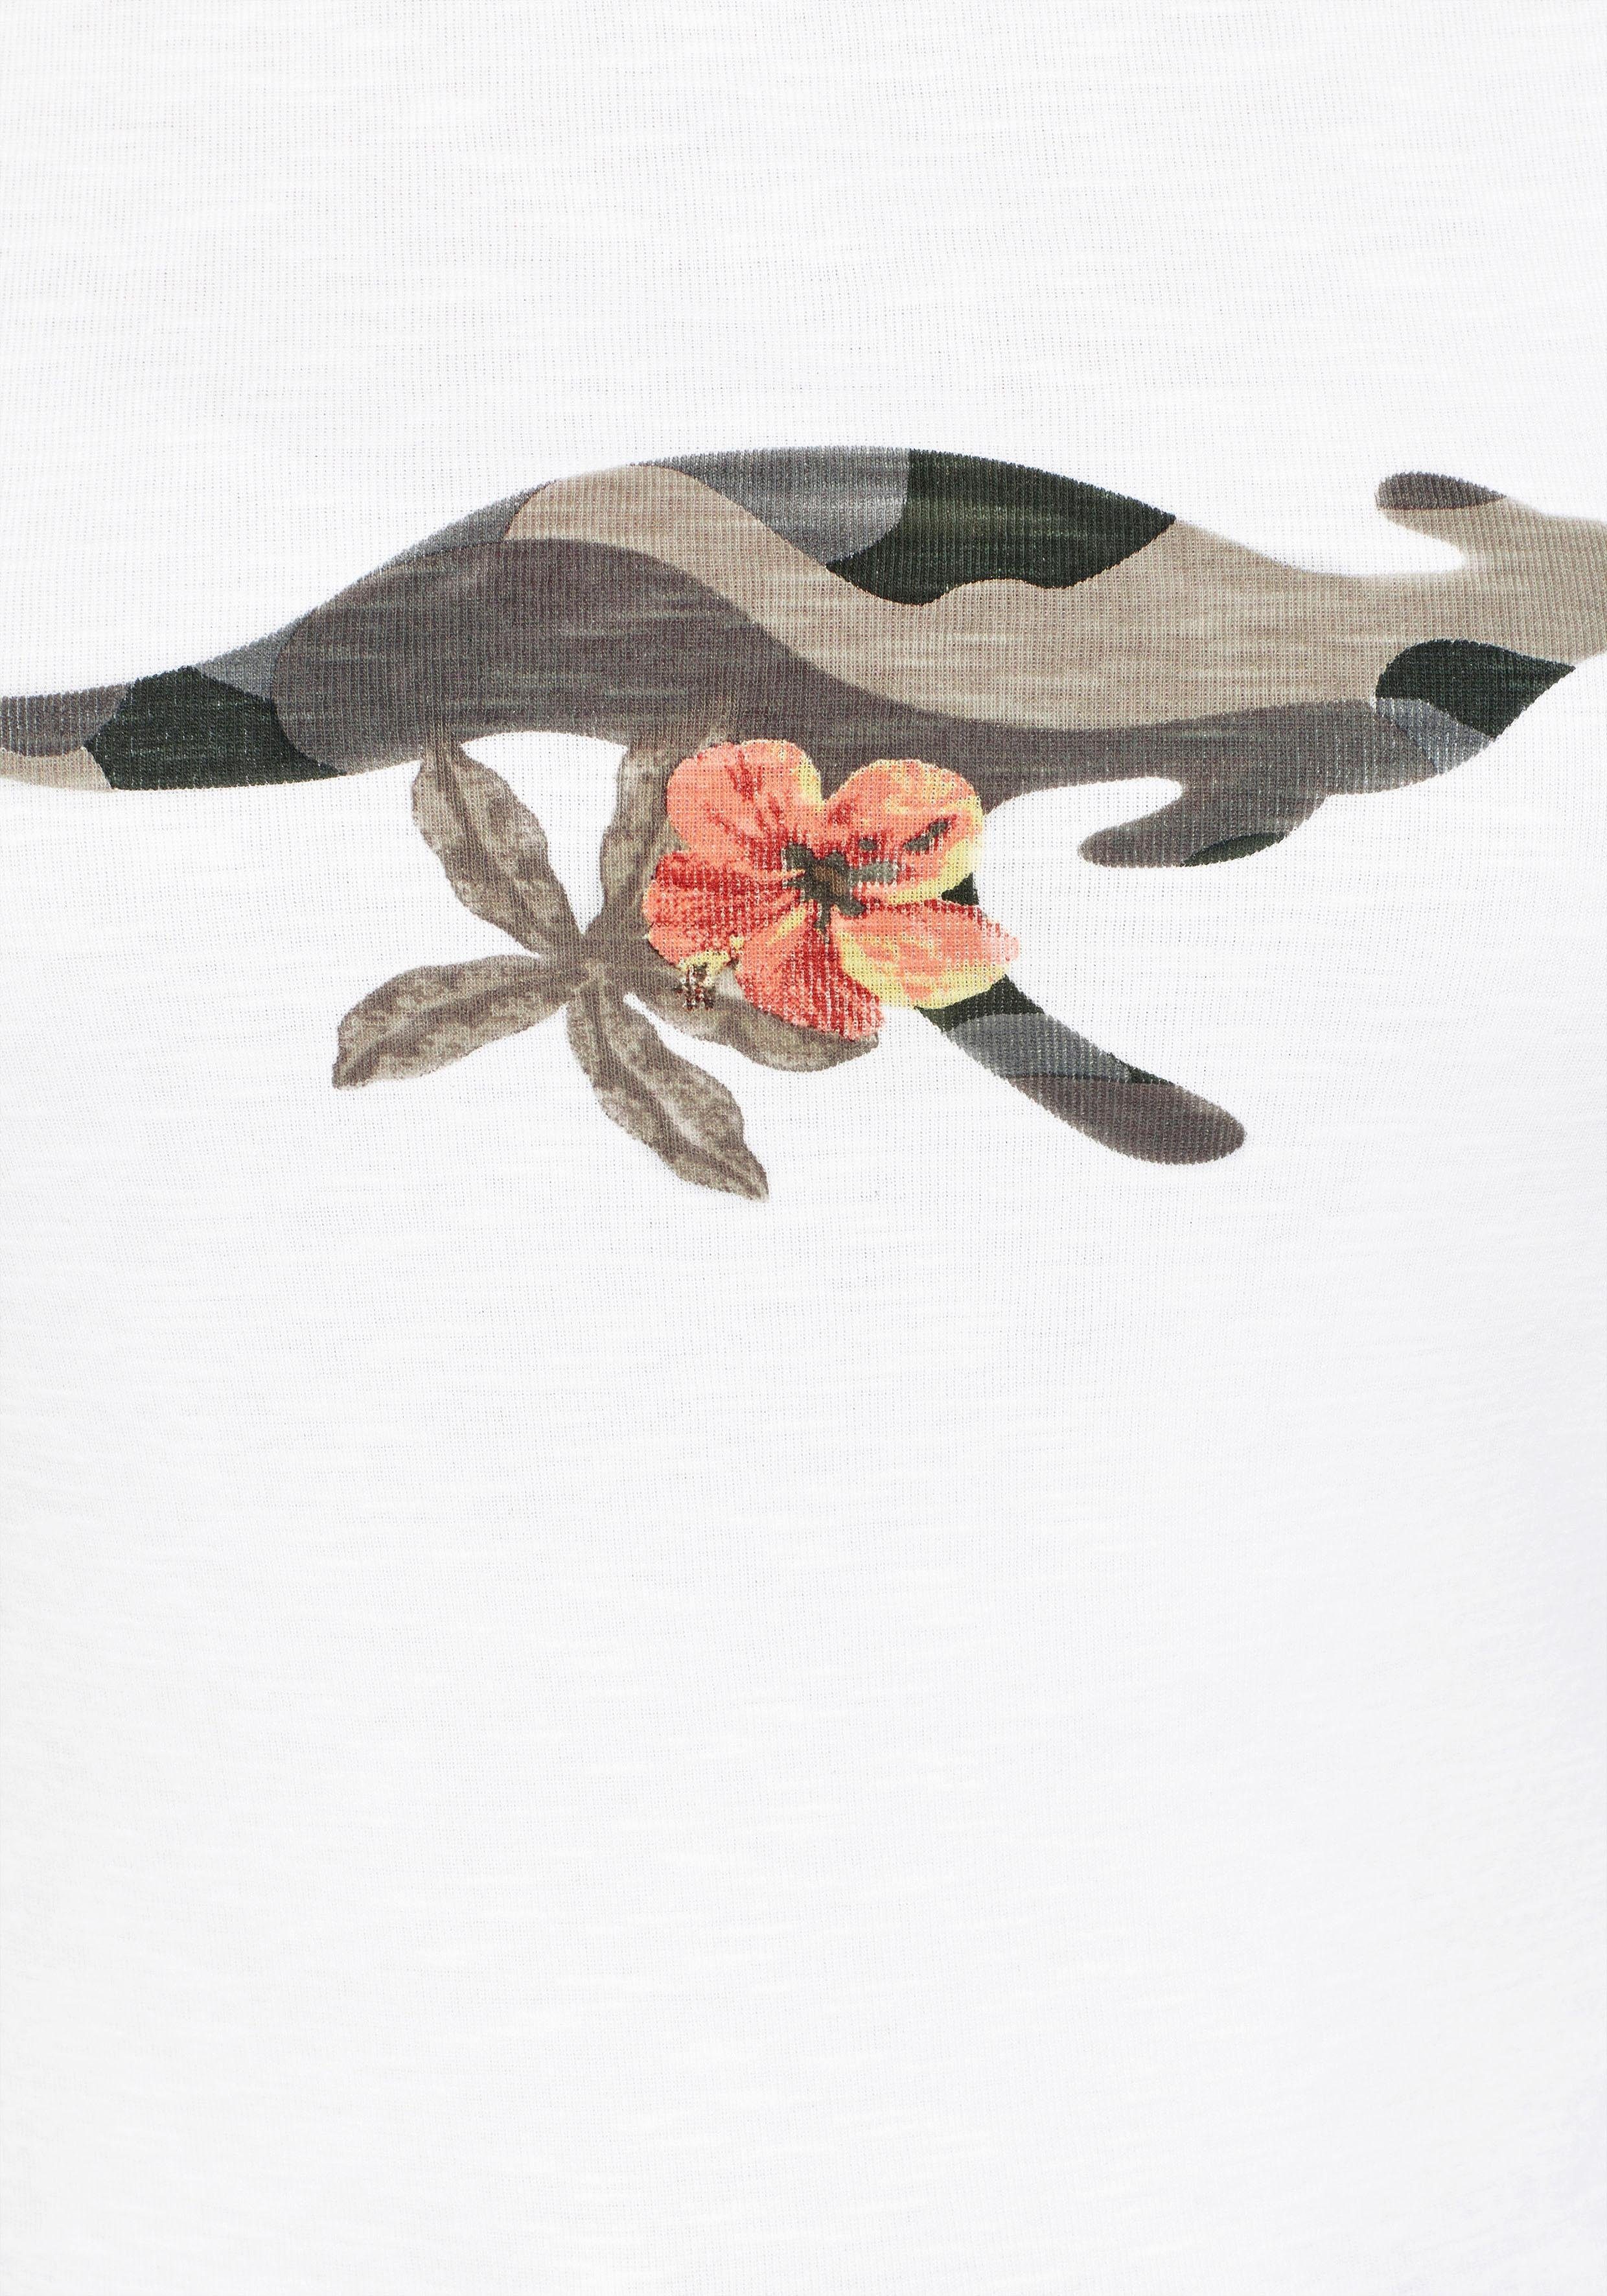 KangaROOS mit Camouflage-Ärmeln 3/4-Arm-Shirt tarnfarbenen Front-Print und offwhite-tarnfarben